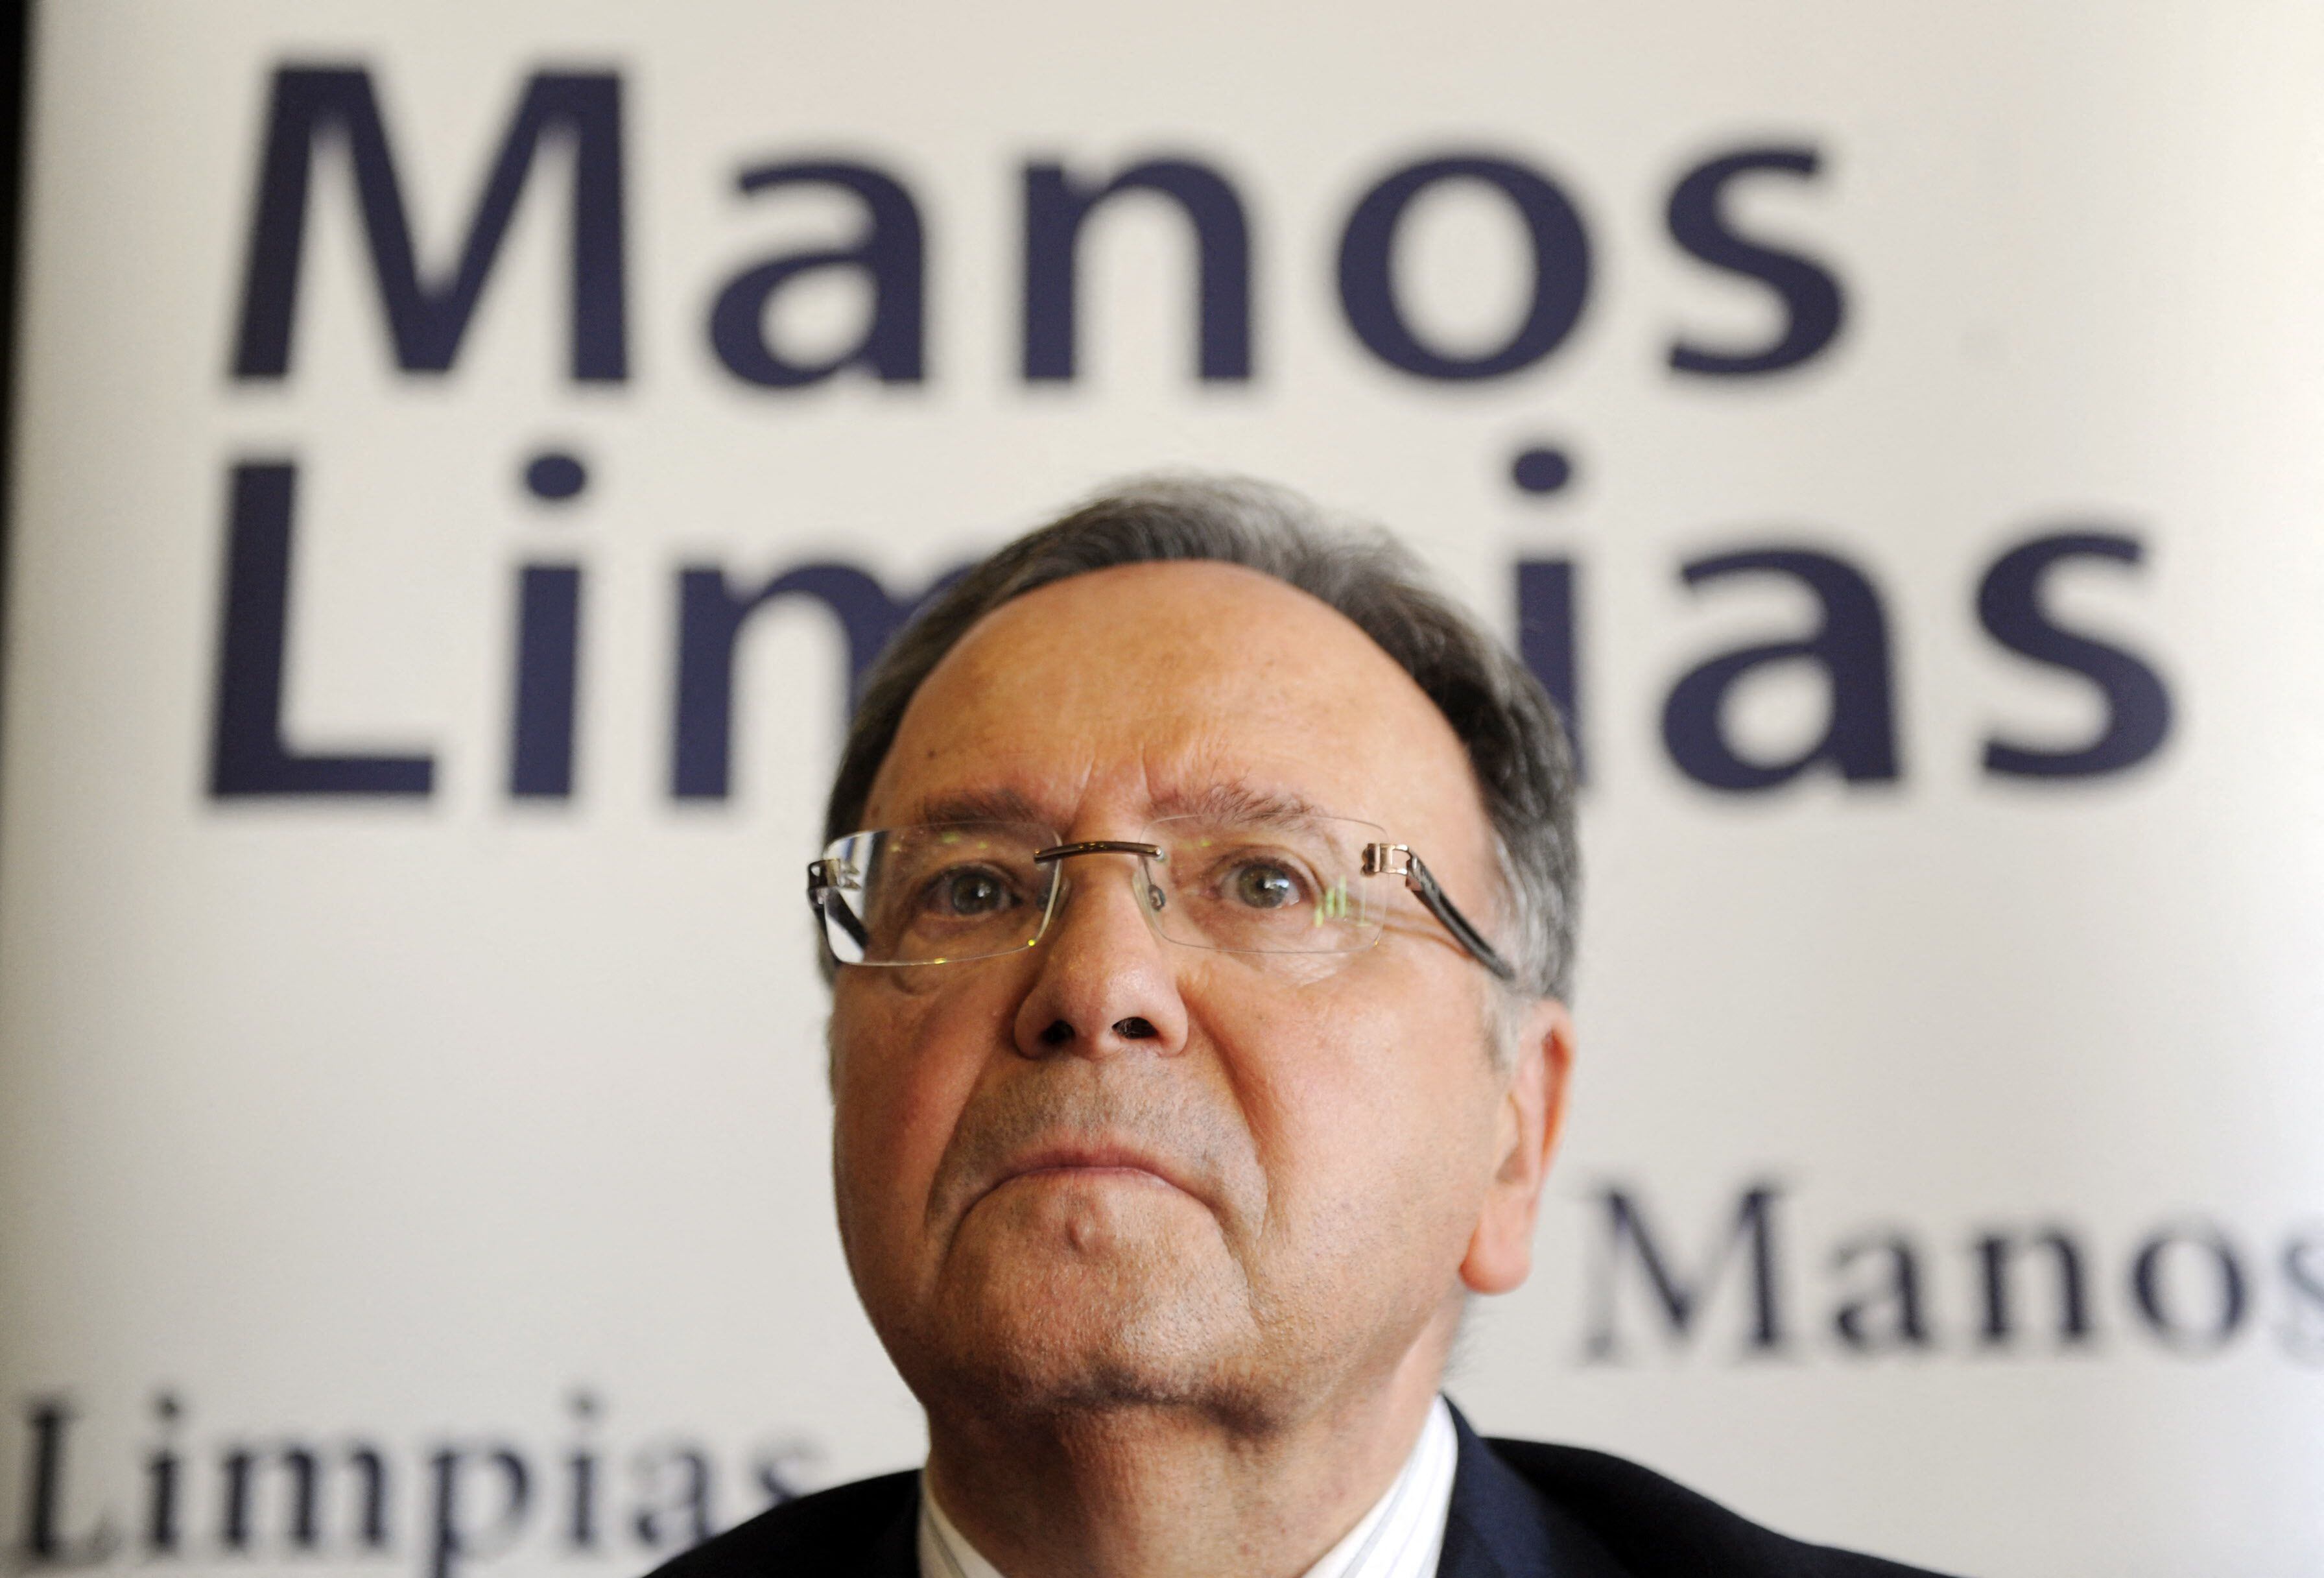 Miguel Bernad, secretario general del sindicato Manos Limpias, ofrece una conferencia de prensa en Madrid el 7 de abril de 2010. (Foto de Dominique FAGET / AFP).